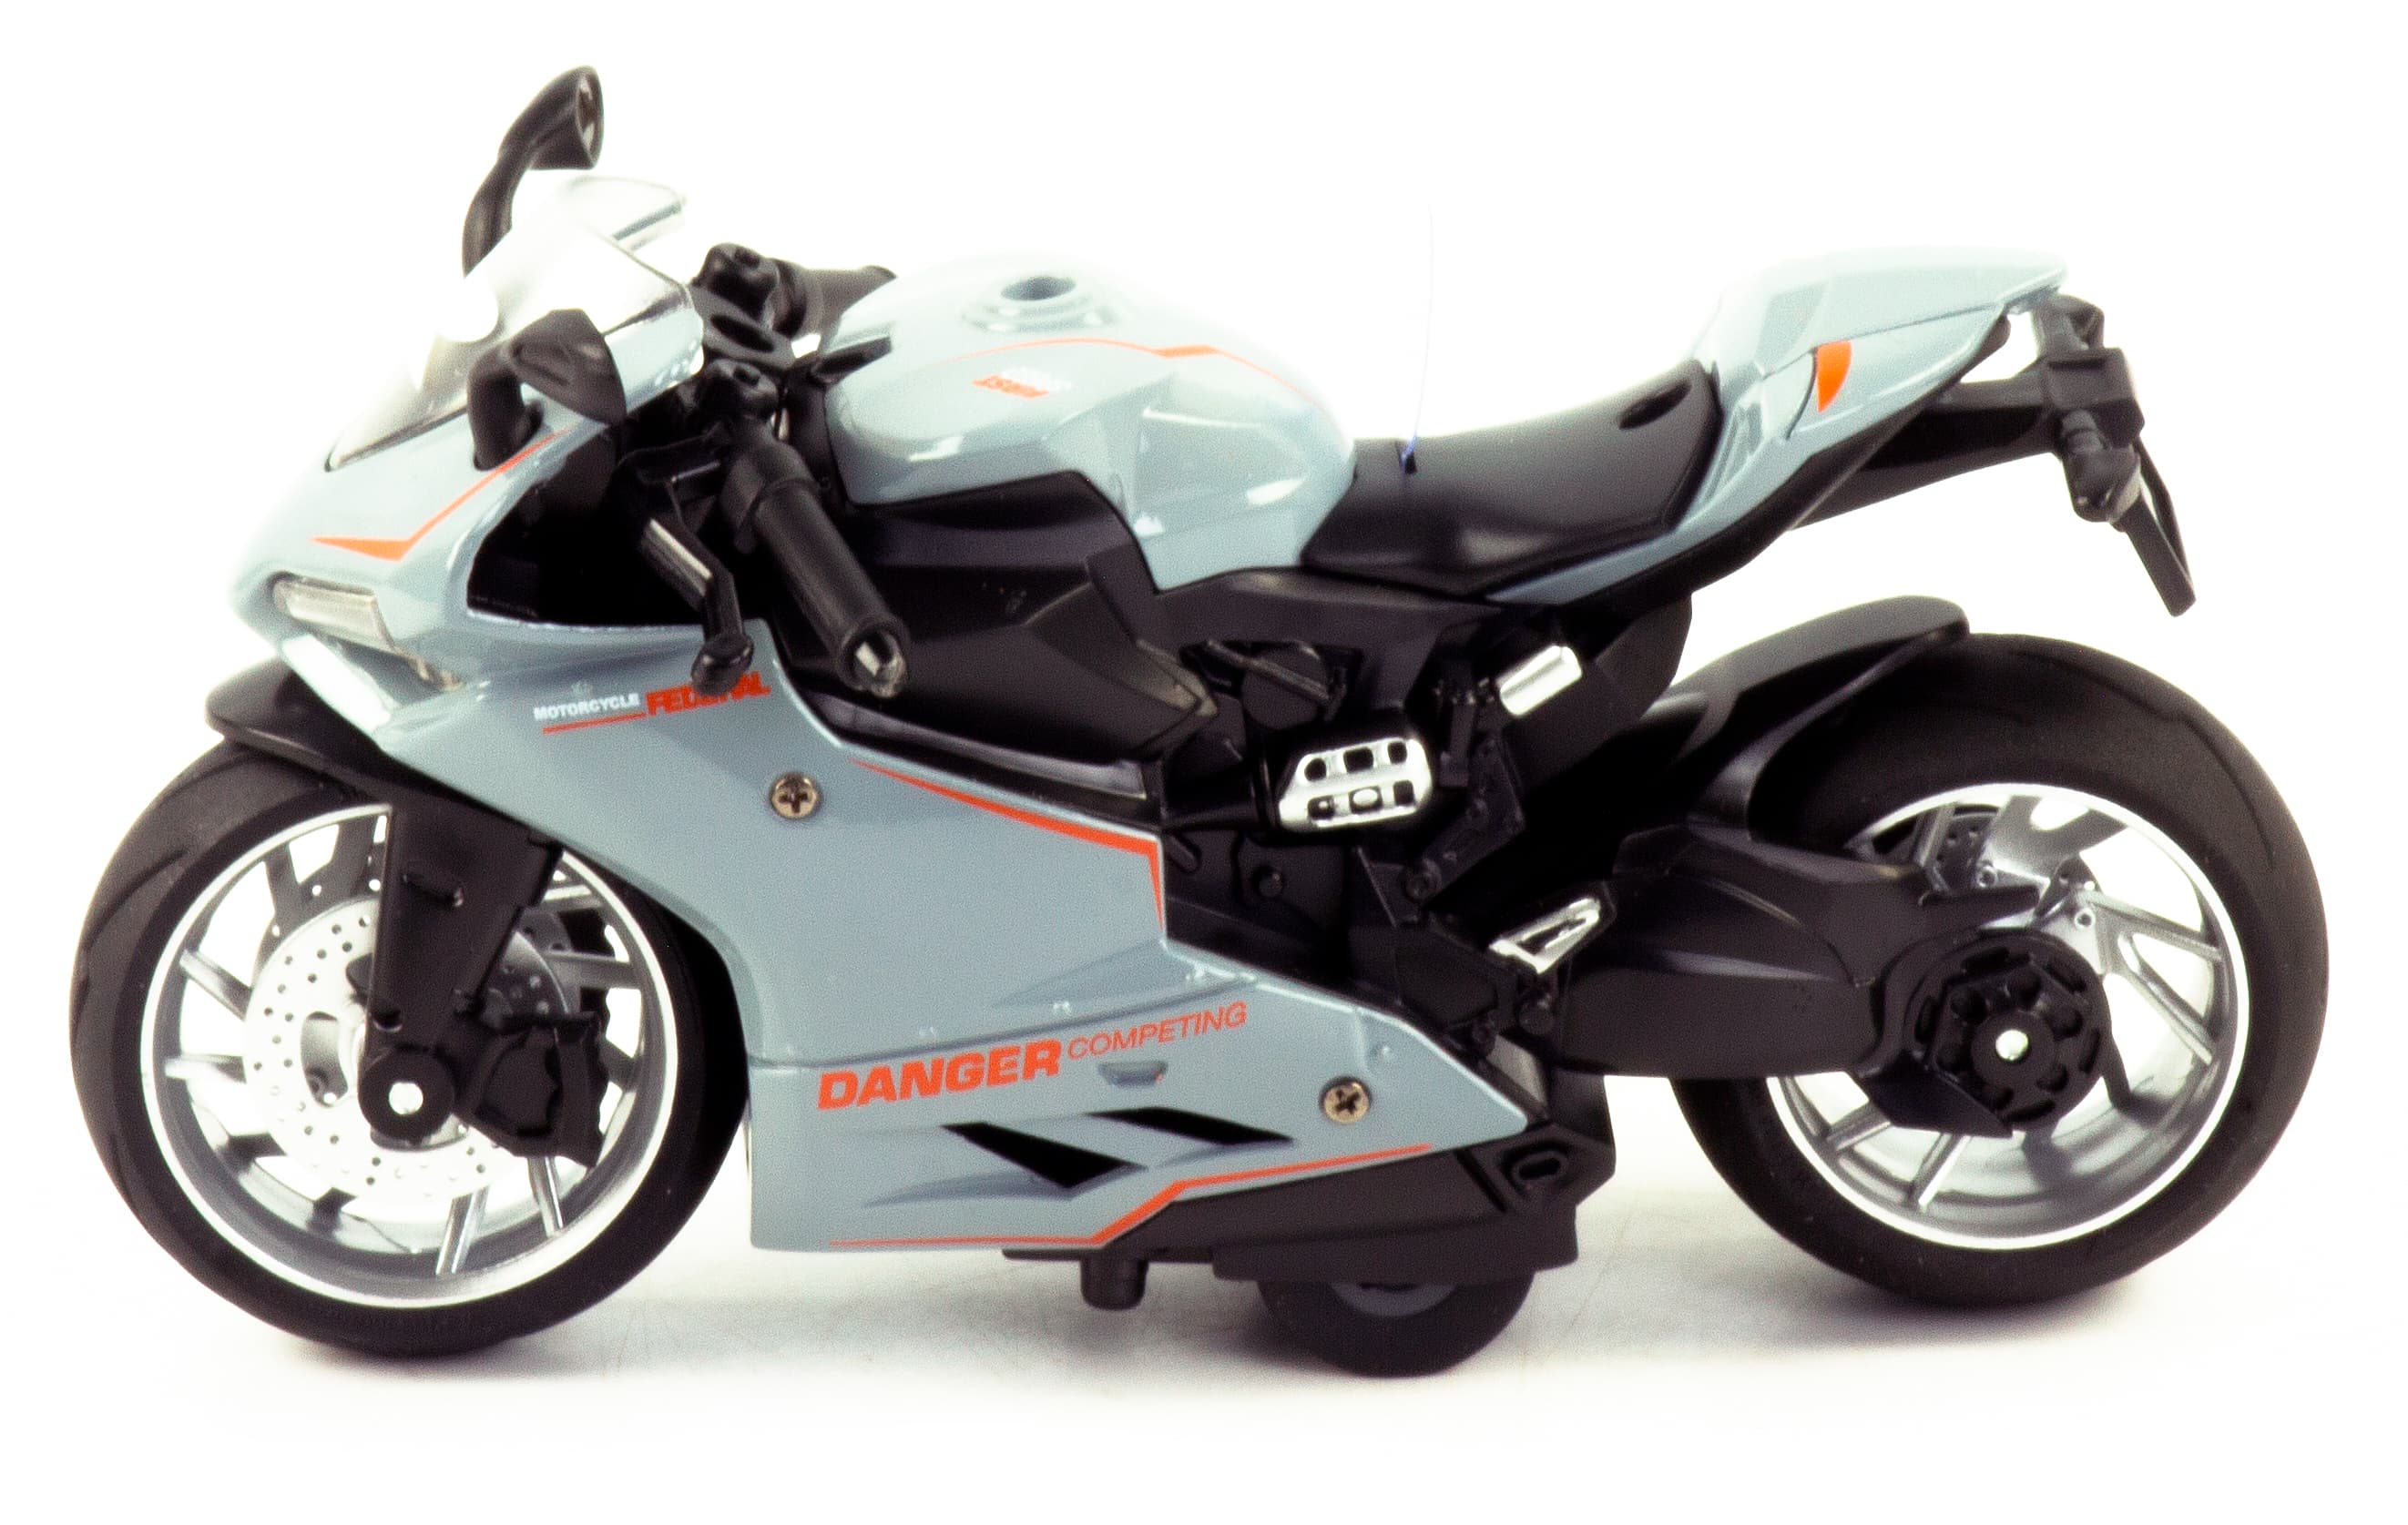 Металлический мотоцикл  Ming Ying 66 1:12 MY66-M2231 15 см. инерционный, свет, звук /Серый